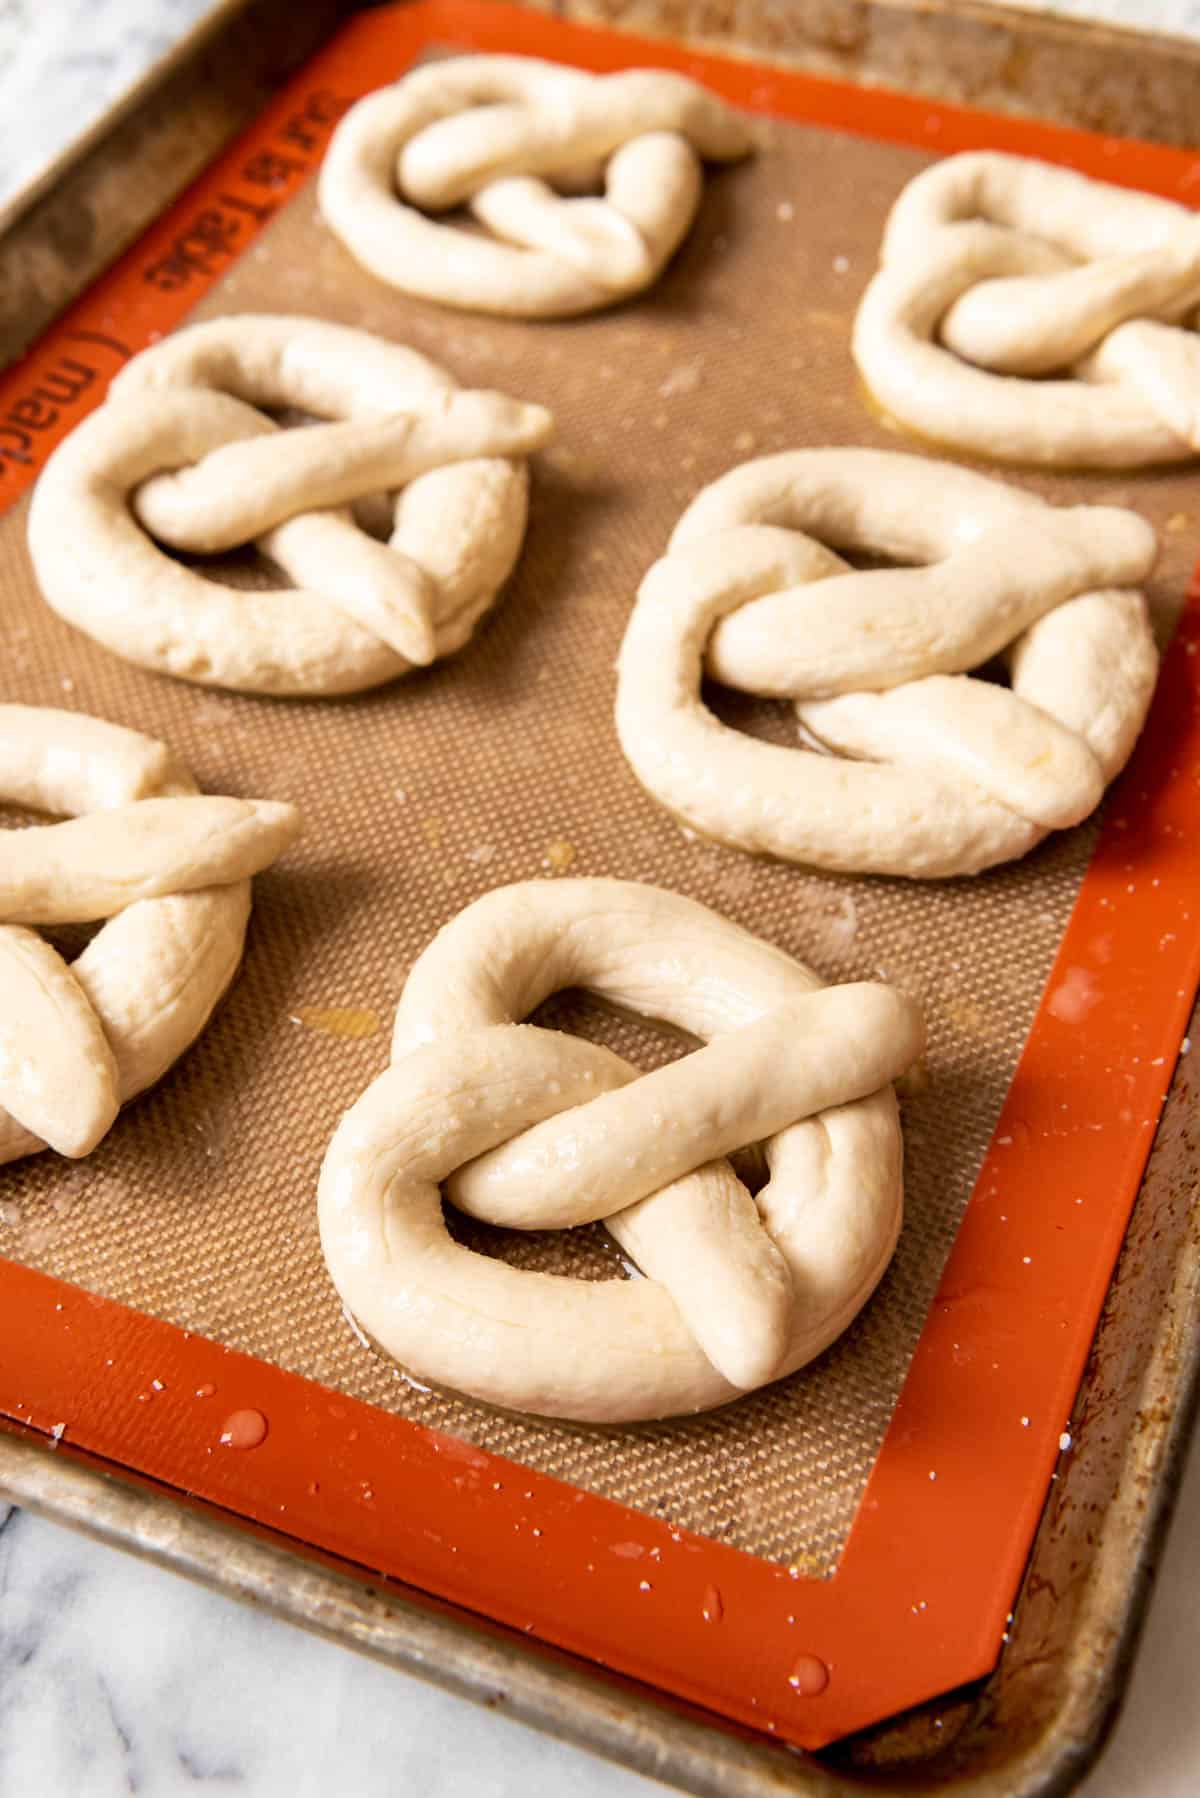 6 pretzels on a baking sheet sprinkled with course salt.